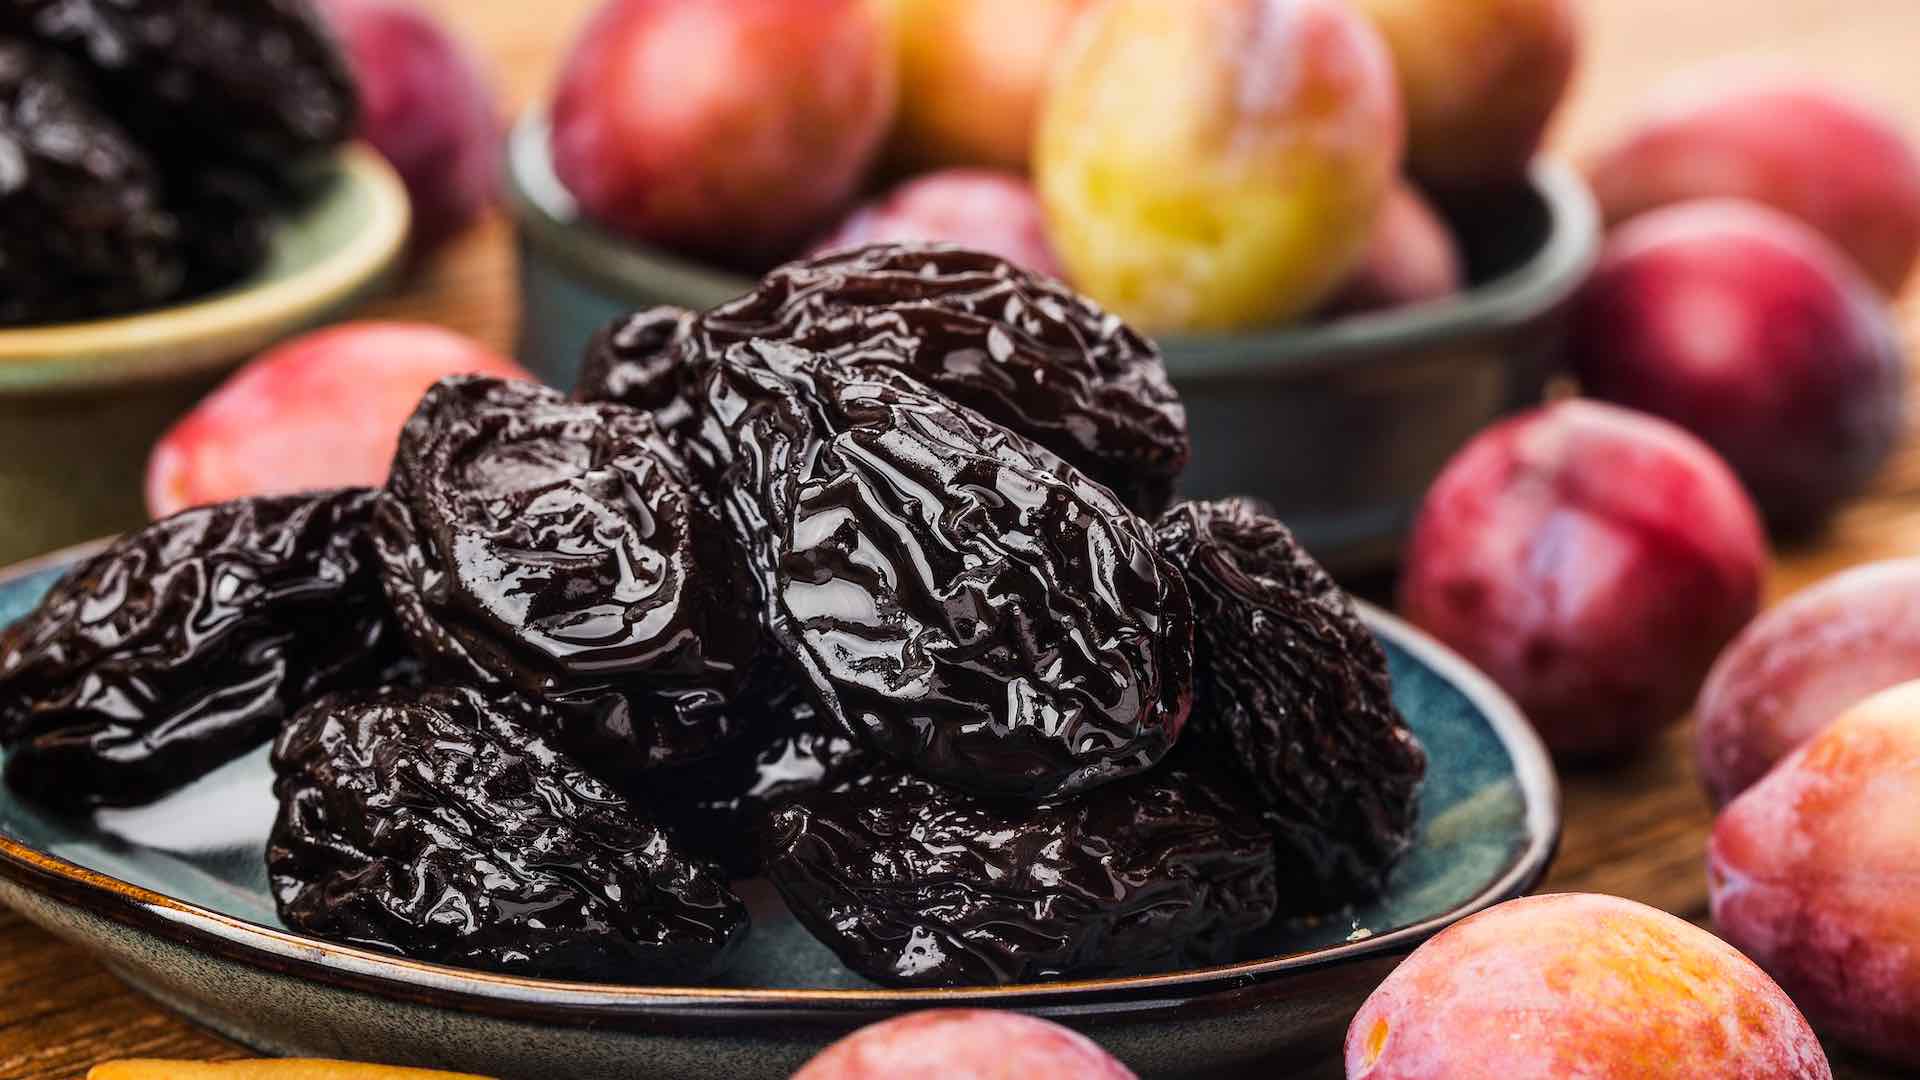 prunes आणि plums आपल्या आहार जास्तीत जास्त